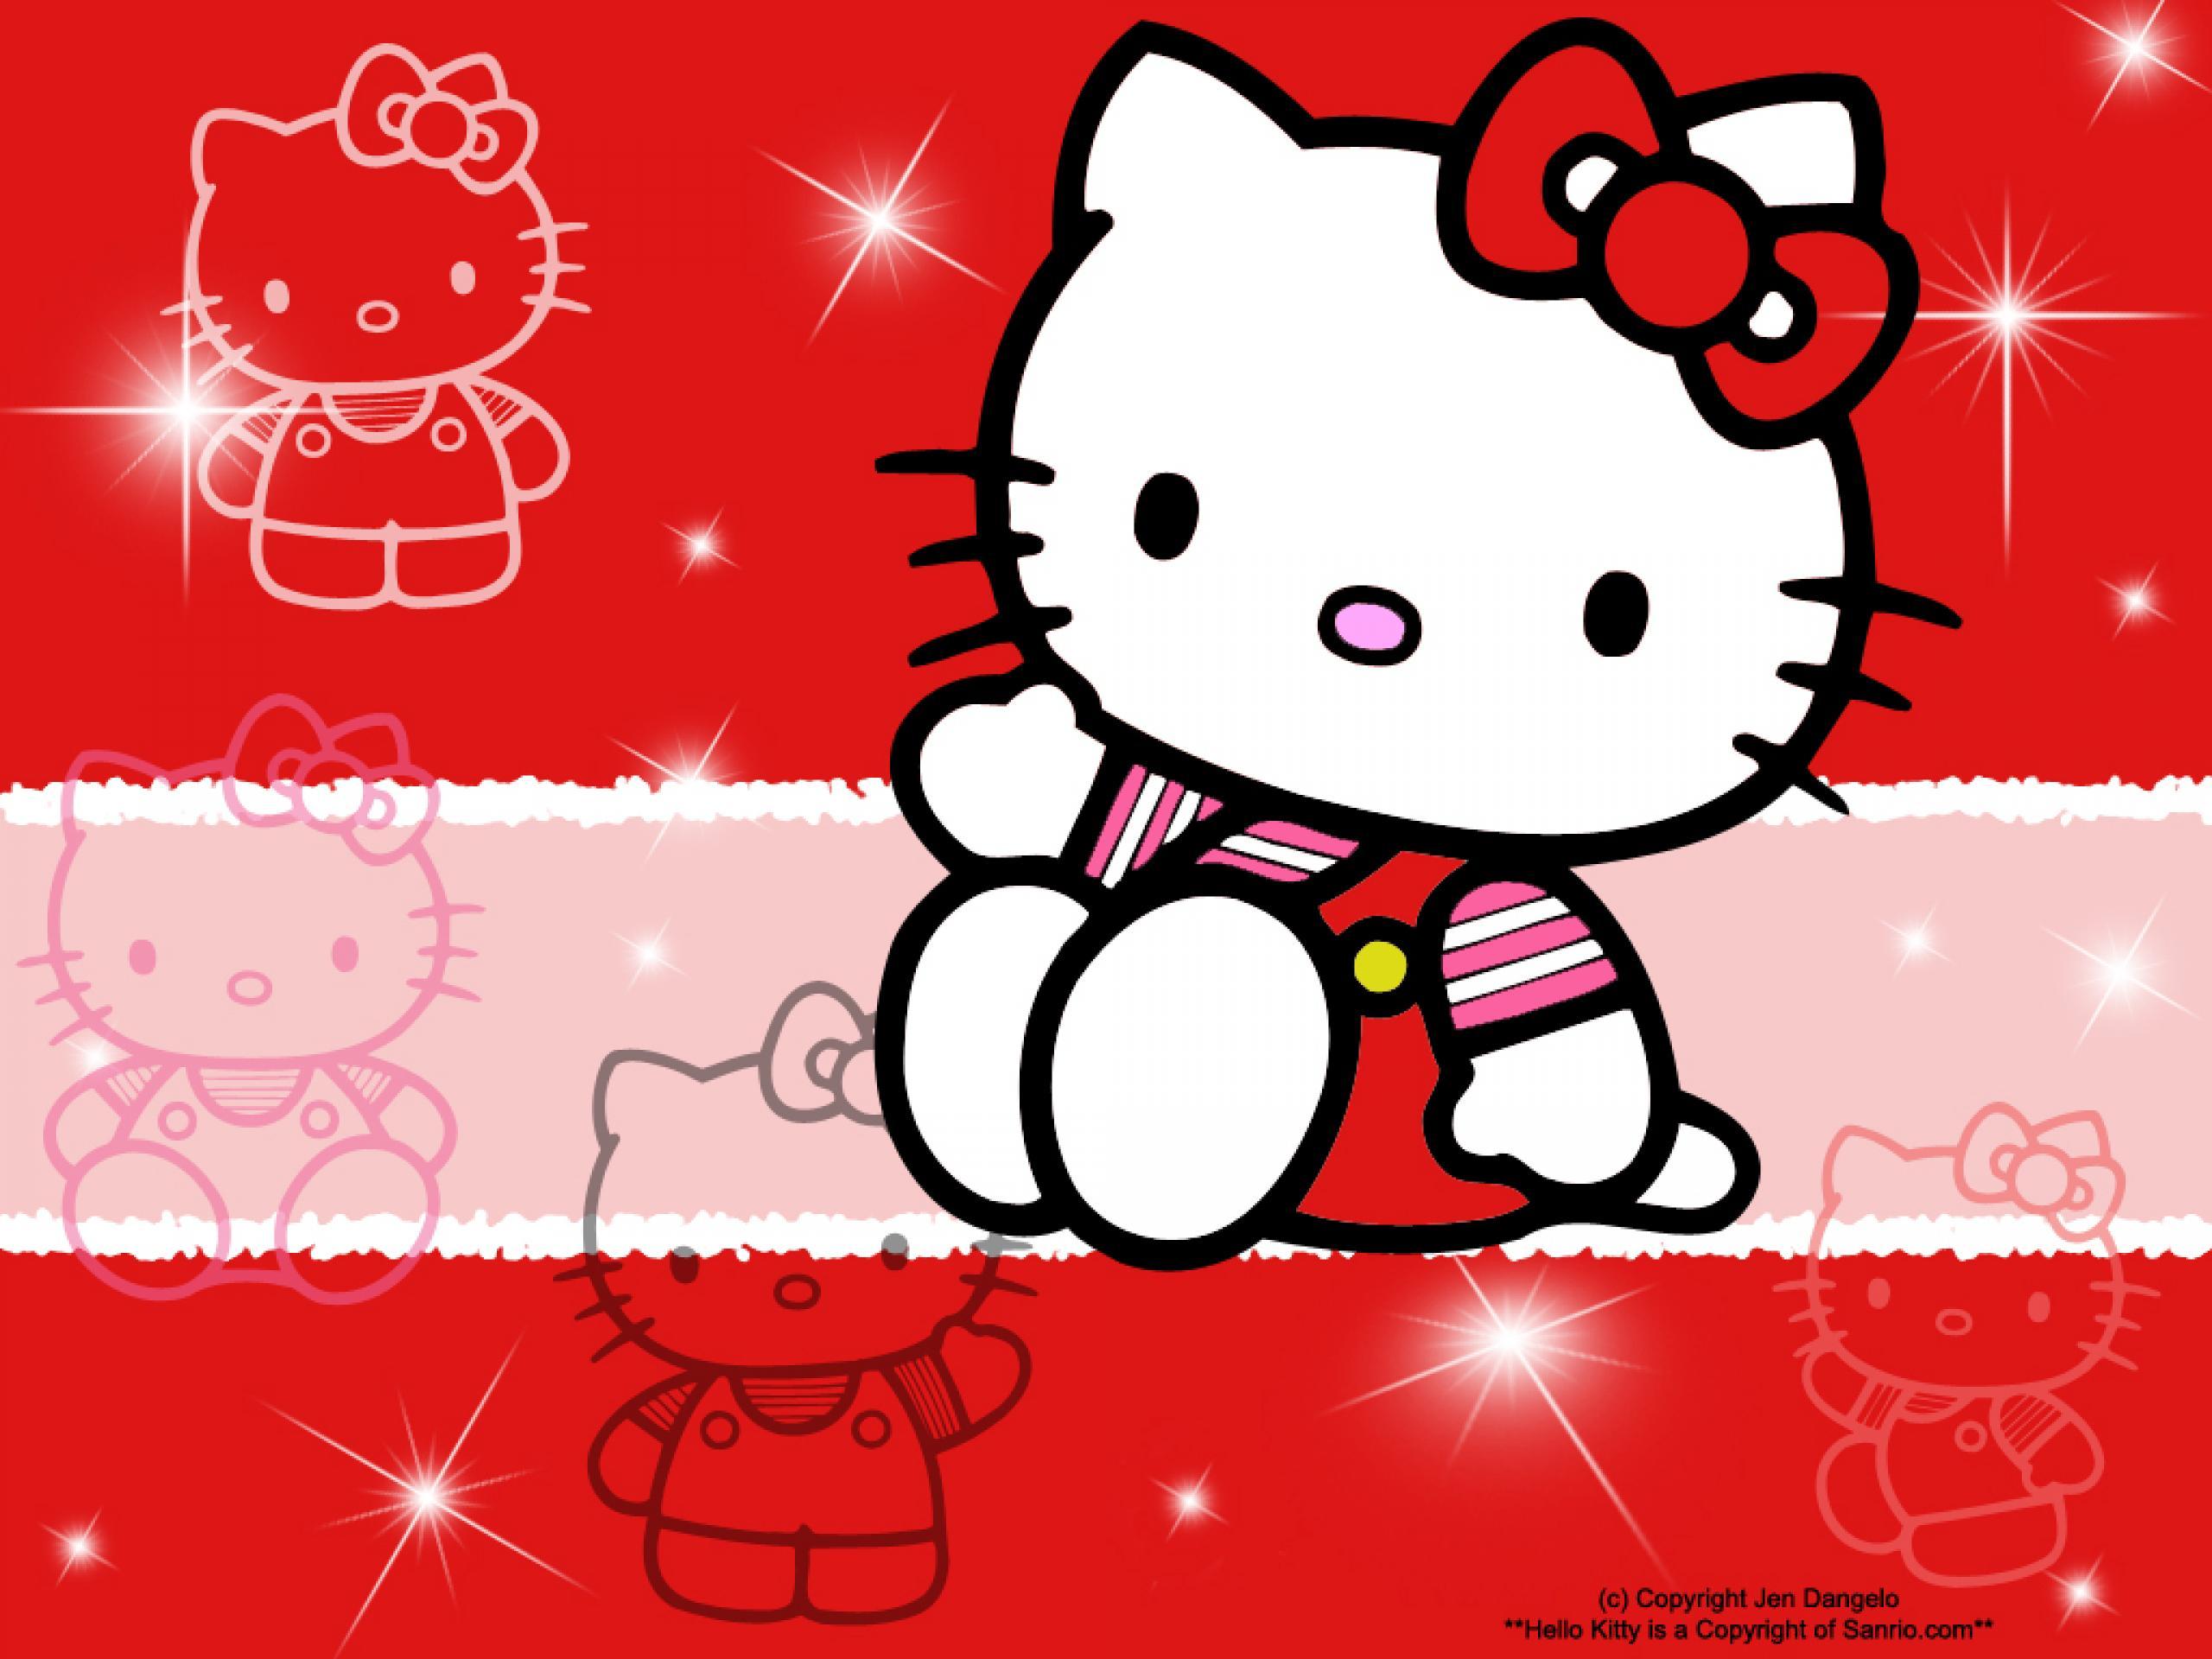 Bạn yêu thích Hello Kitty? Hãy khám phá những hình nền đẹp lung linh với nhân vật cực kì dễ thương này. Tải ngay những hình nền Hello Kitty đầy màu sắc và sinh động để trang trí cho điện thoại, máy tính hoặc máy tính bảng của bạn.